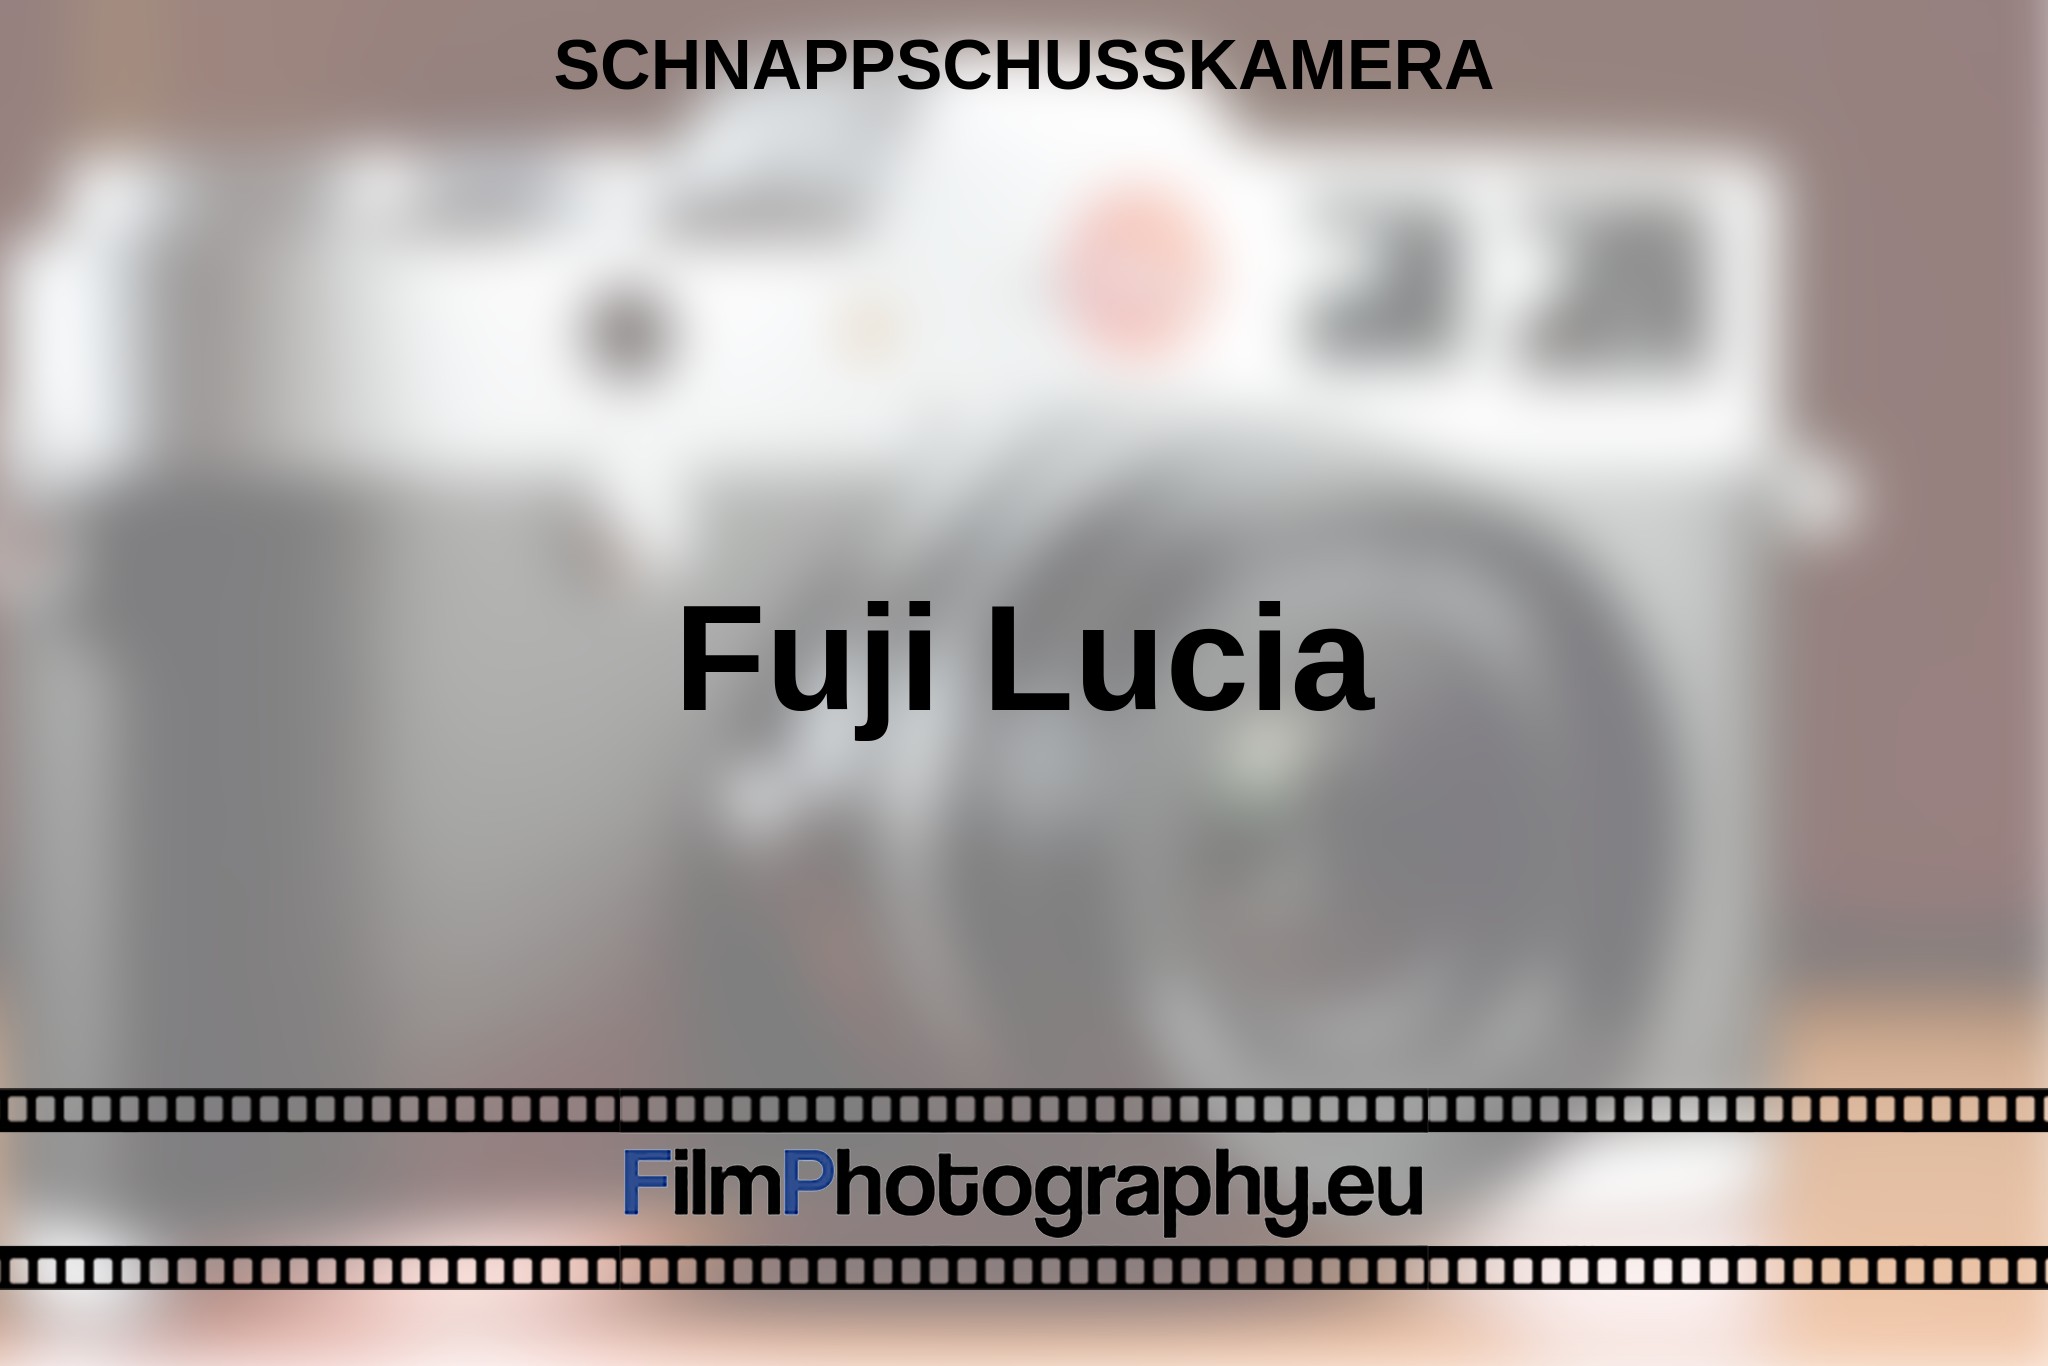 fuji-lucia-schnappschusskamera-bnv.jpg